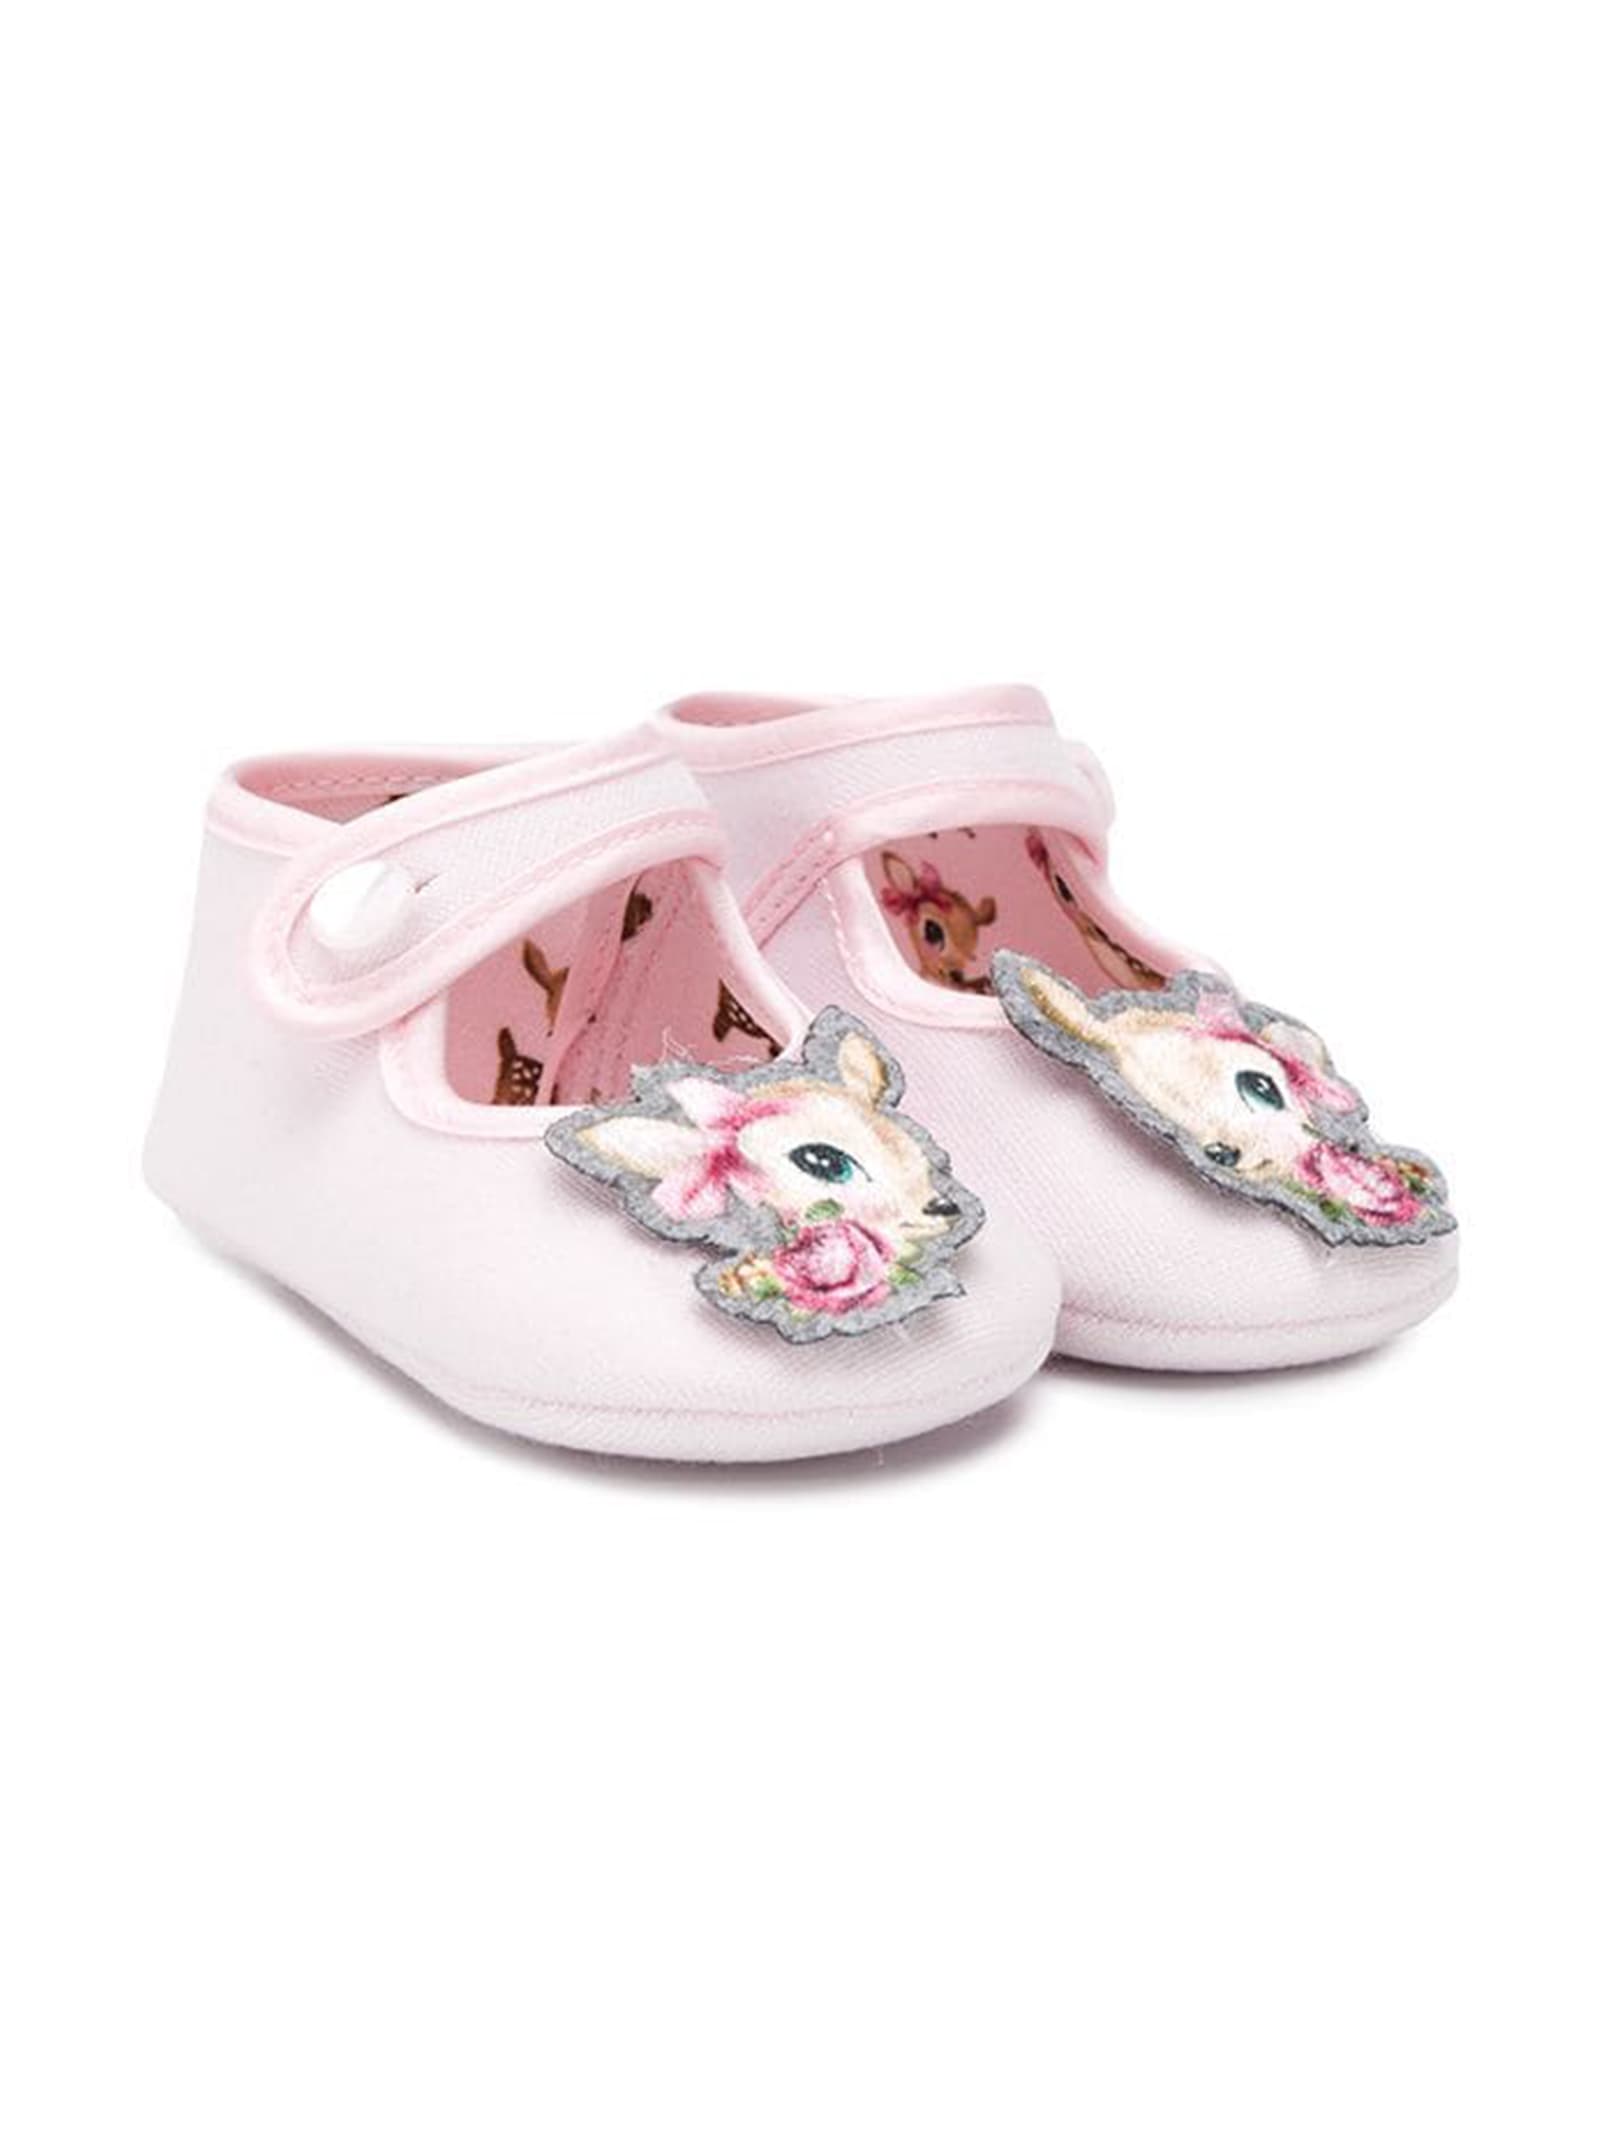 Monnalisa Monnalisa Pink Baby Shoes 